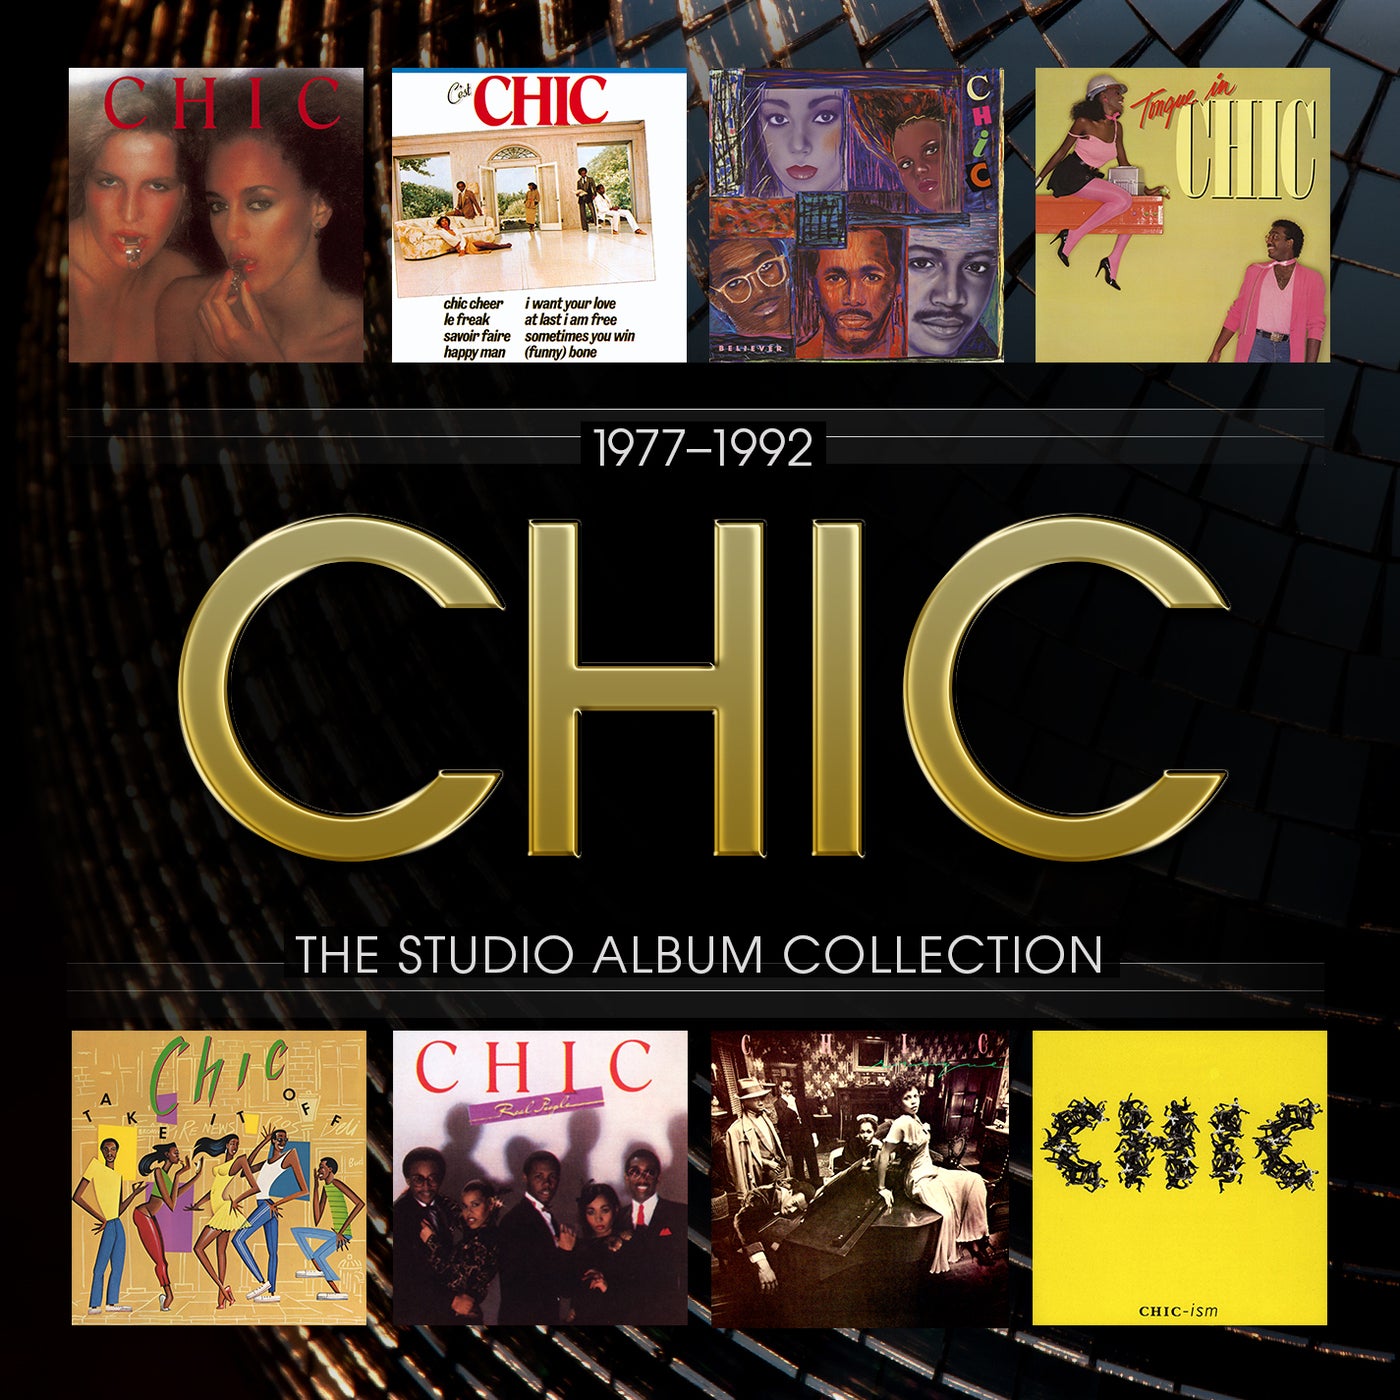 Le Freak - C'est Chic - Album by CHIC